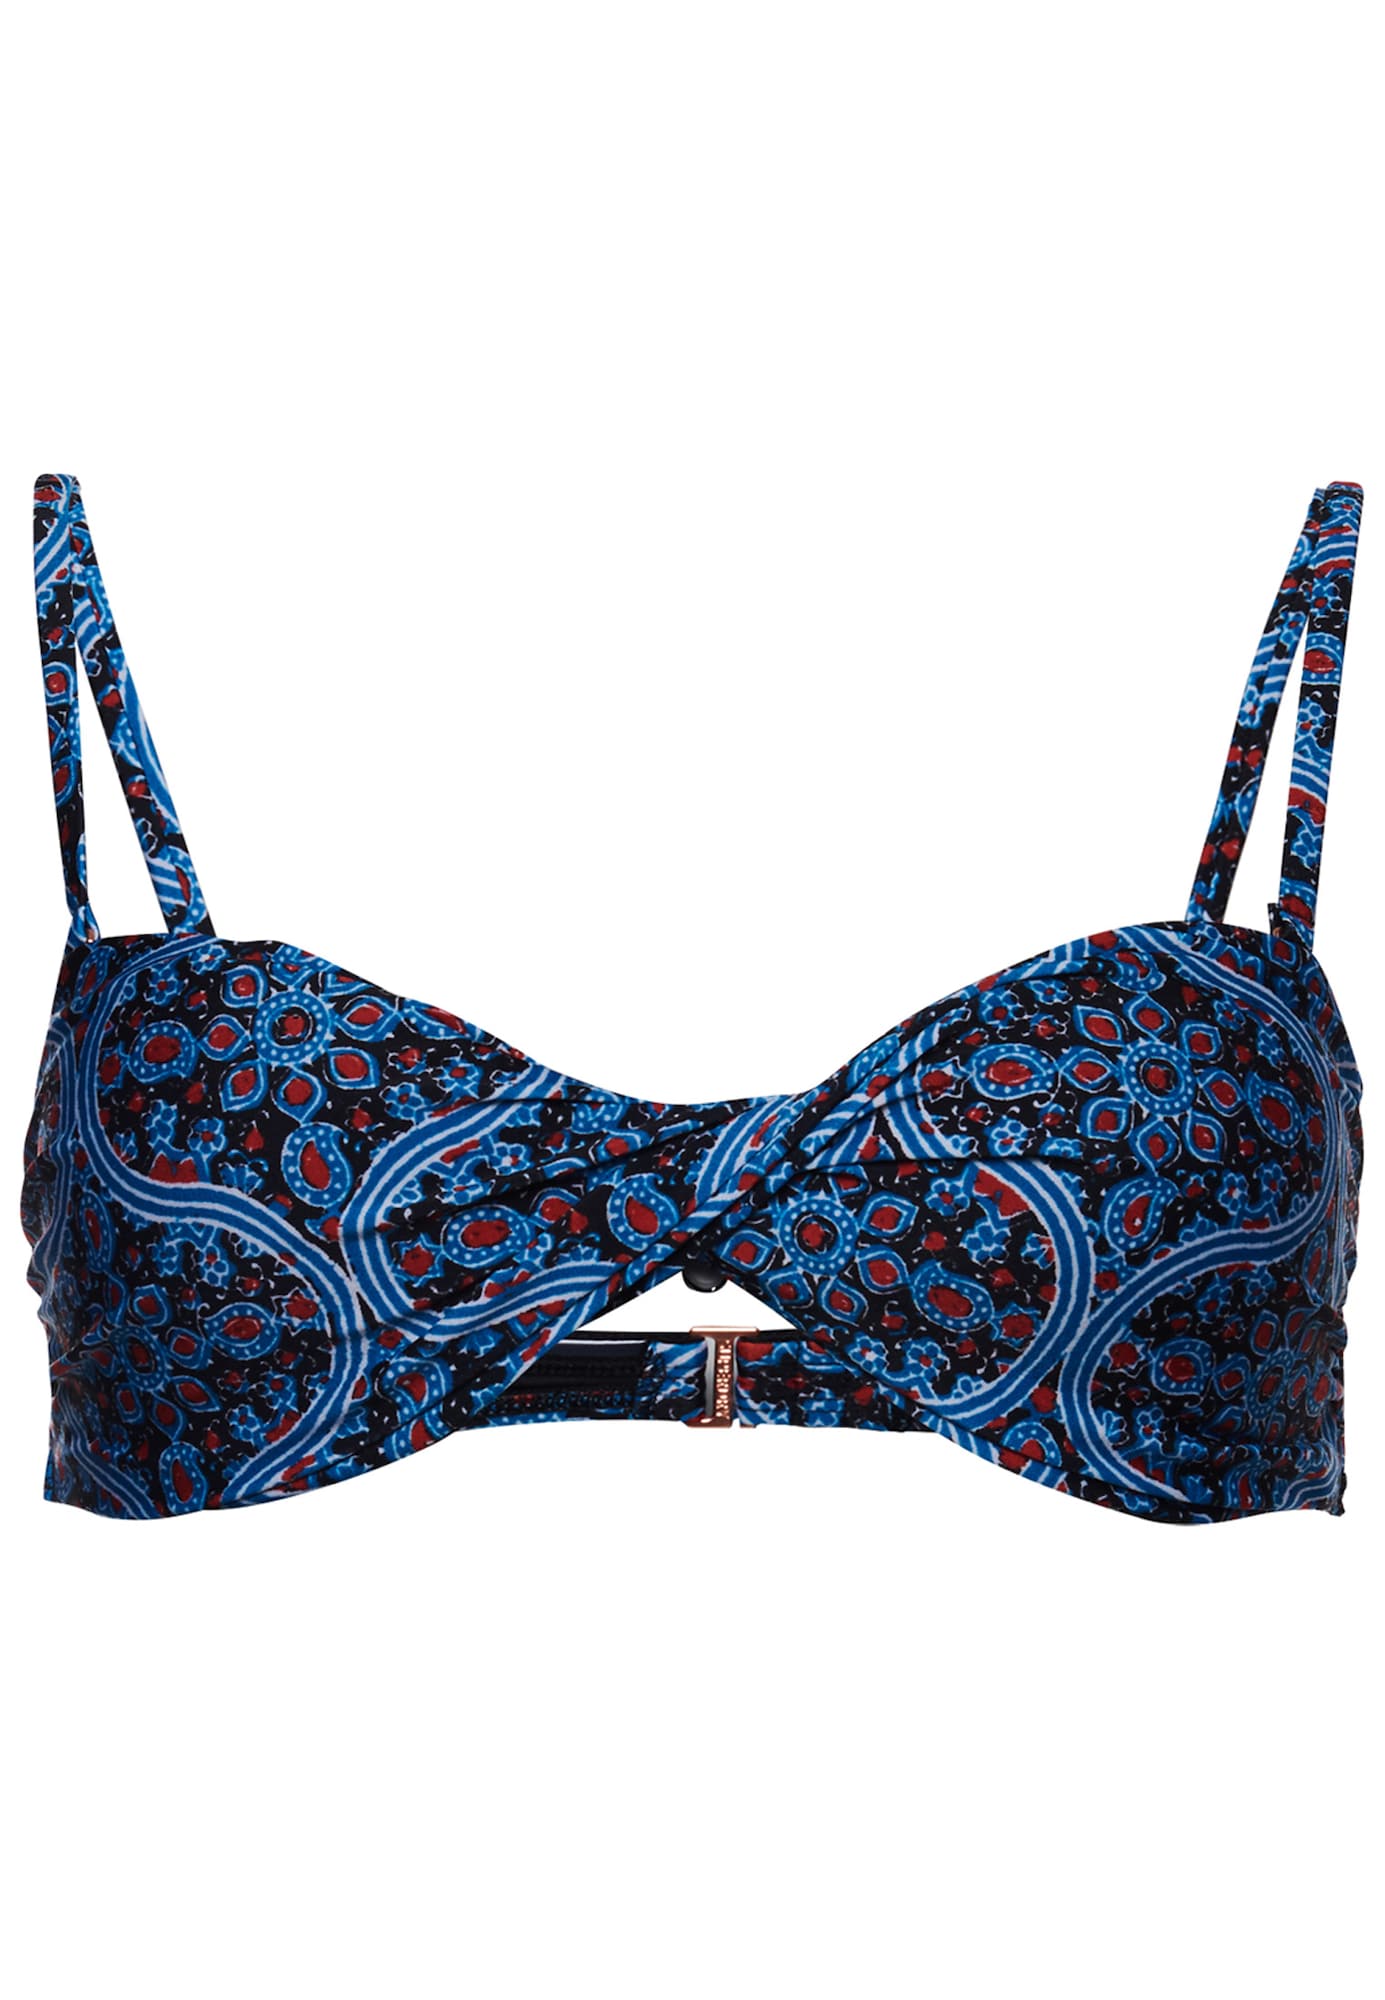 Superdry Bikinio viršutinė dalis 'Boho' tamsiai mėlyna jūros spalva / sodri mėlyna („karališka“) / raudona / balta